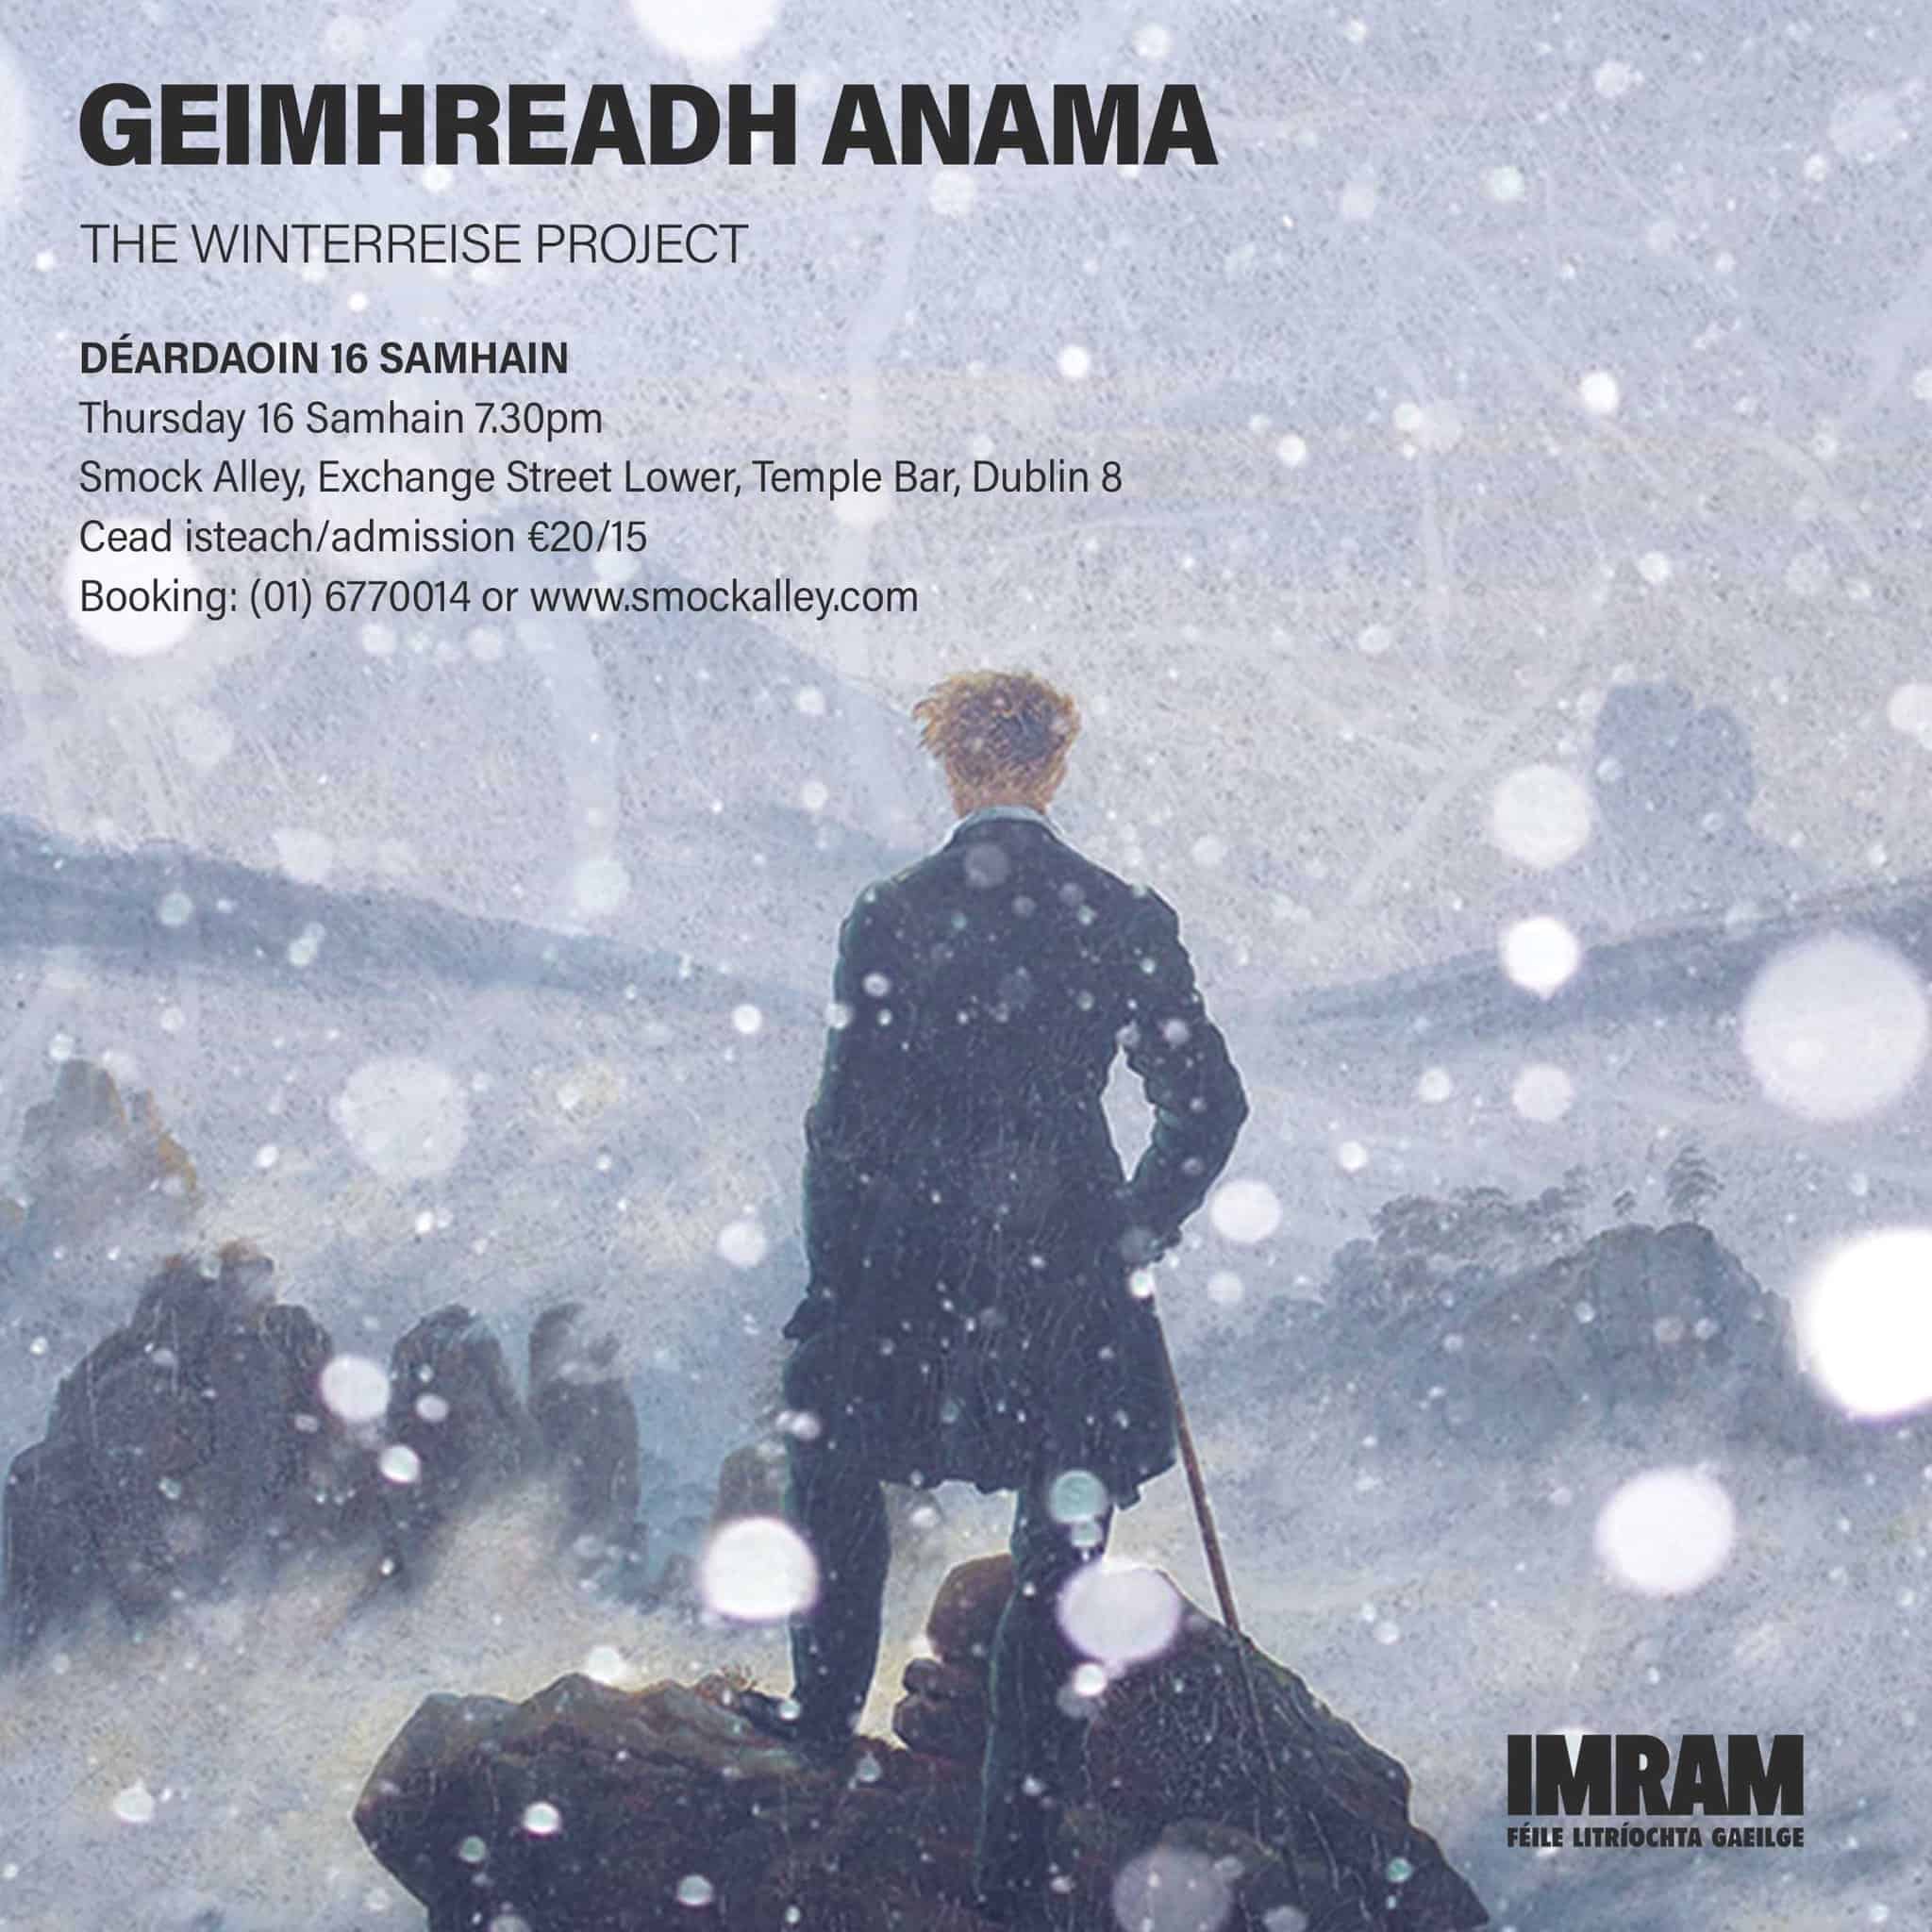 GEIMHREADH ANAMA – The Winterreise Project